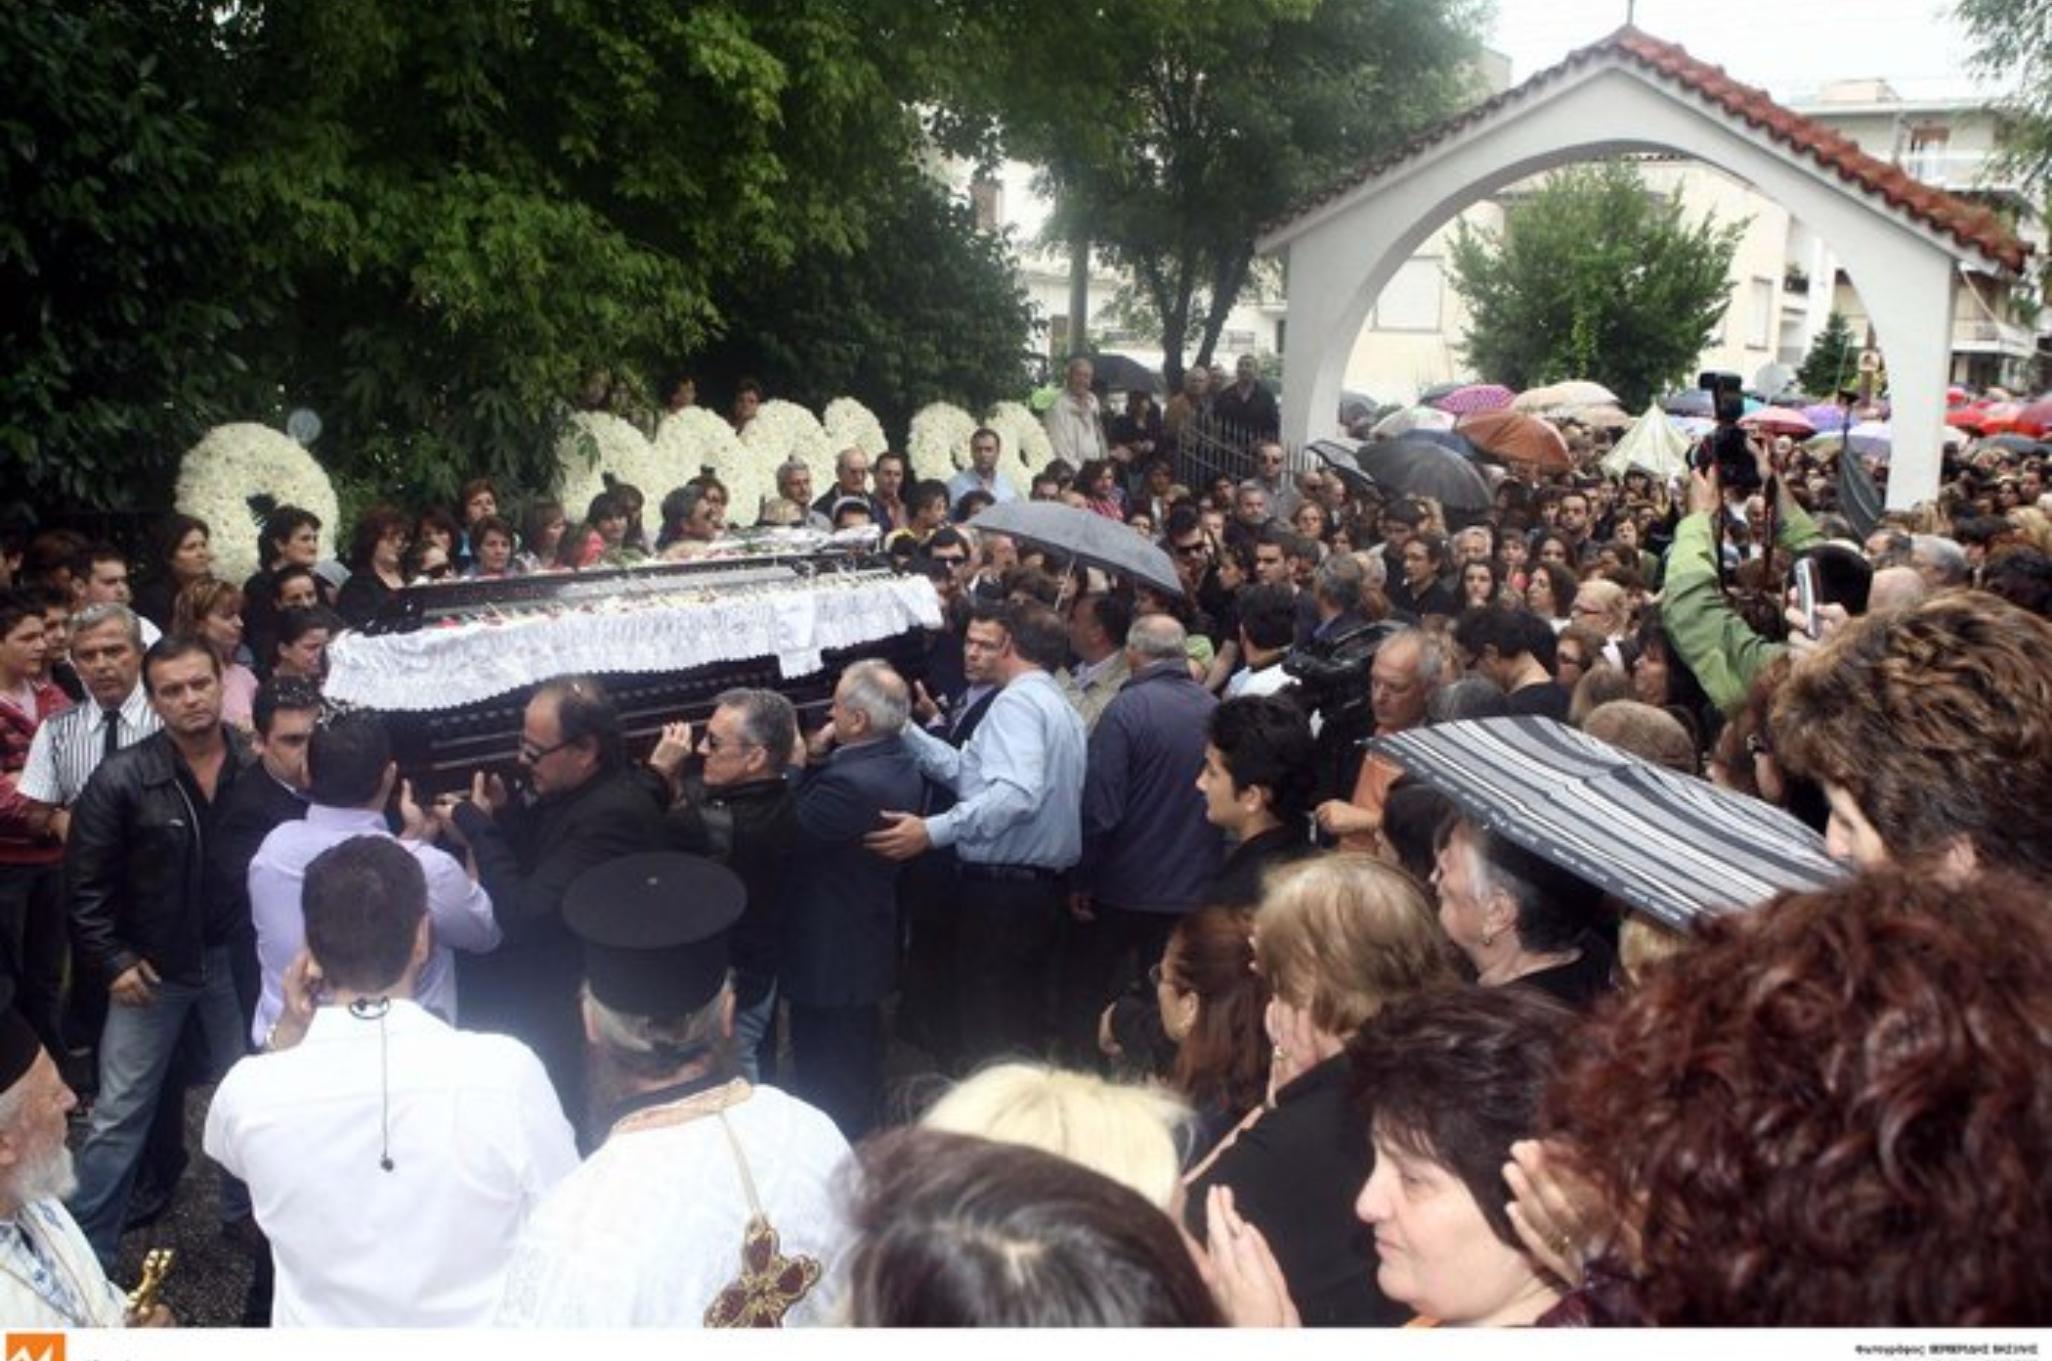 Νίκος Σεργιανόπουλος: Η άγρια δολοφονία του με 21 μαχαιριές στην καρδιά στοιχειώνει ακόμα – Η κατάρα που ξεκλήρισε την οικογένειά του μέσα σε πέντε χρόνια